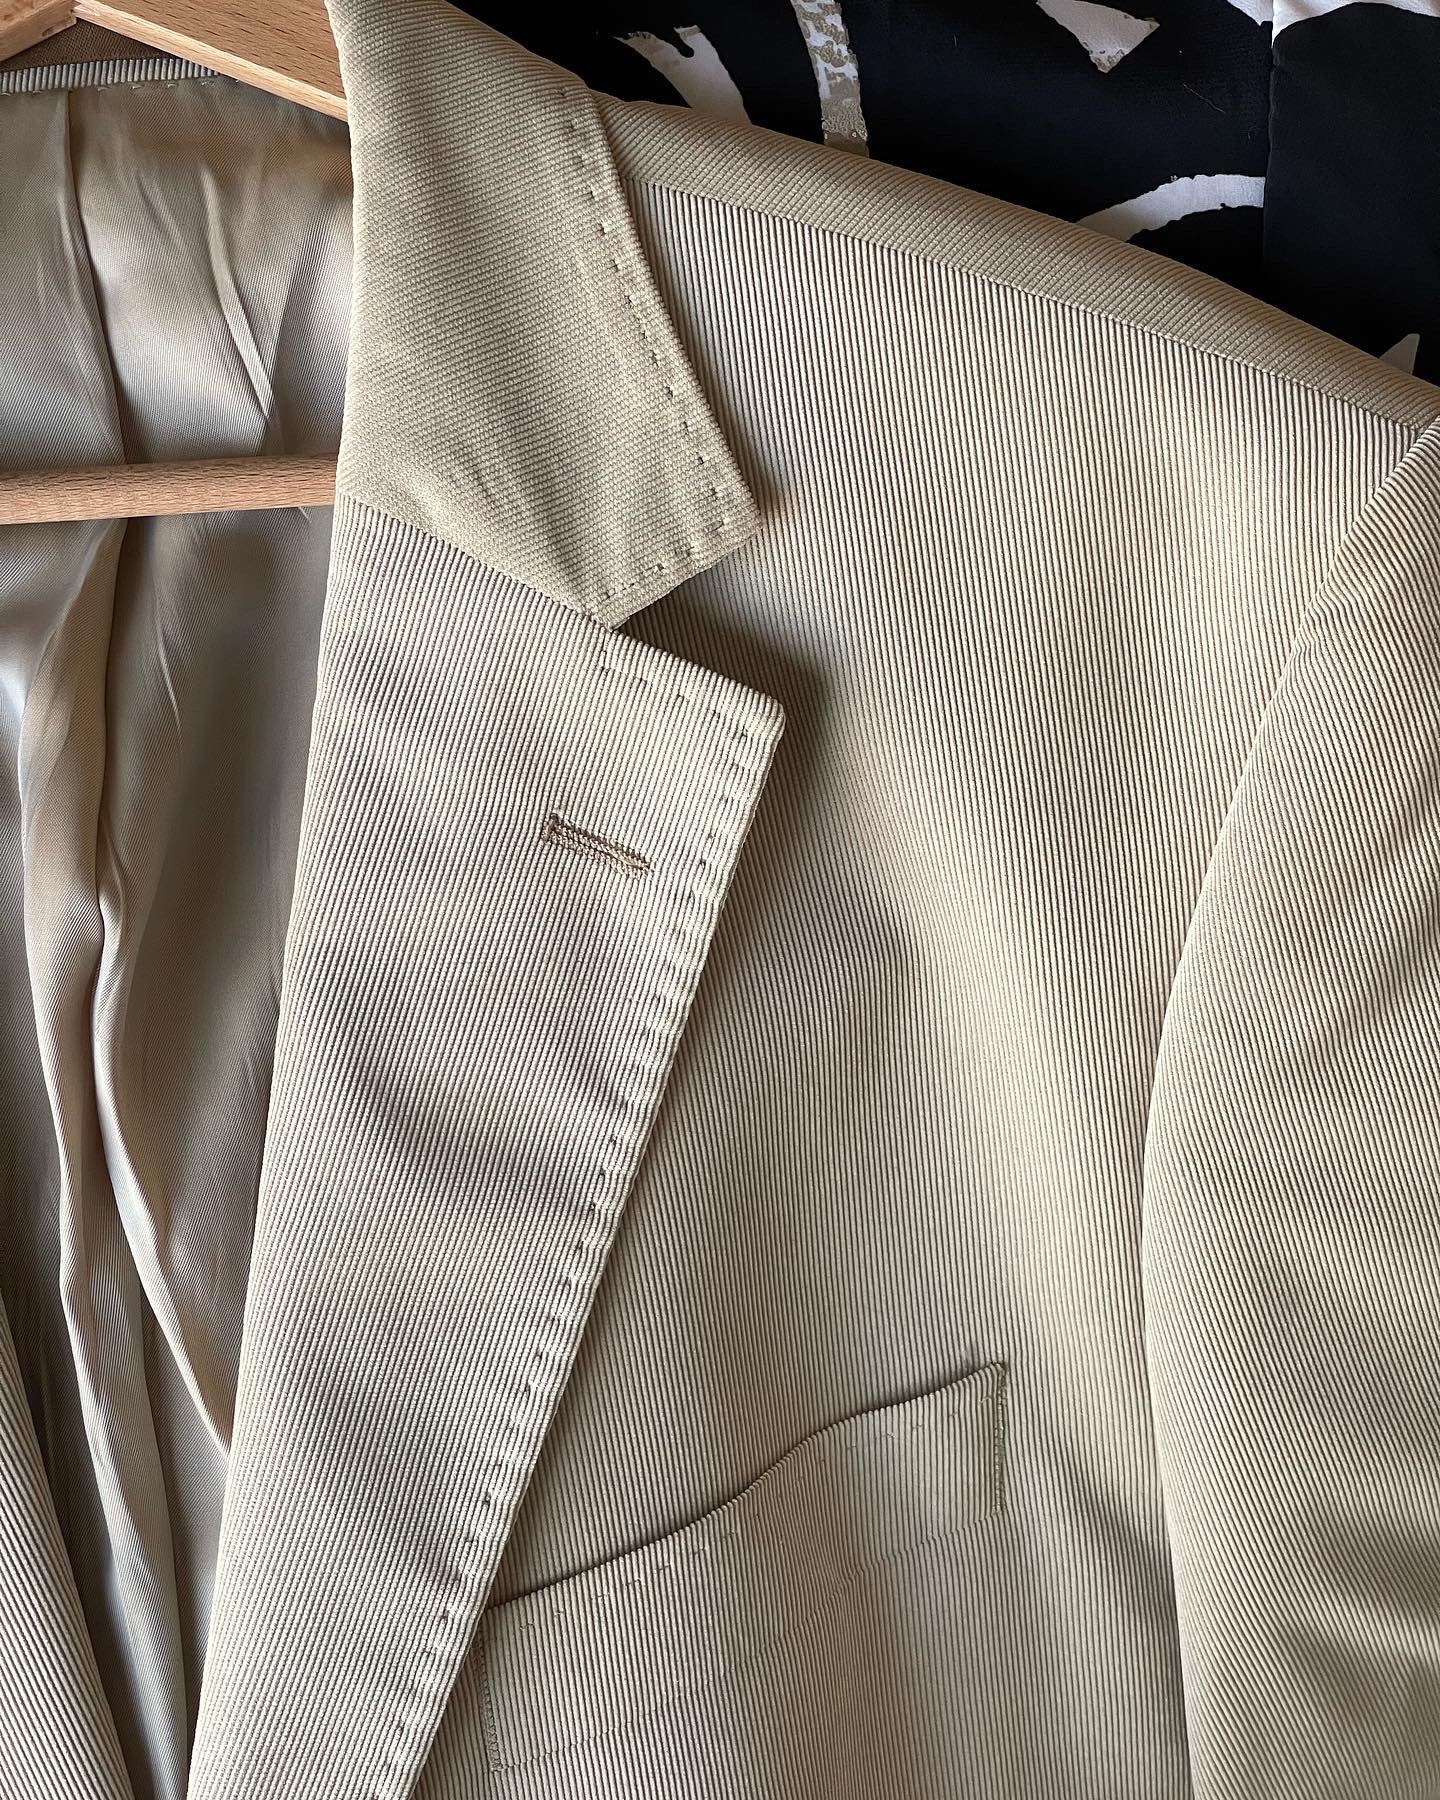 Vintage corduroy blazer in light beige color